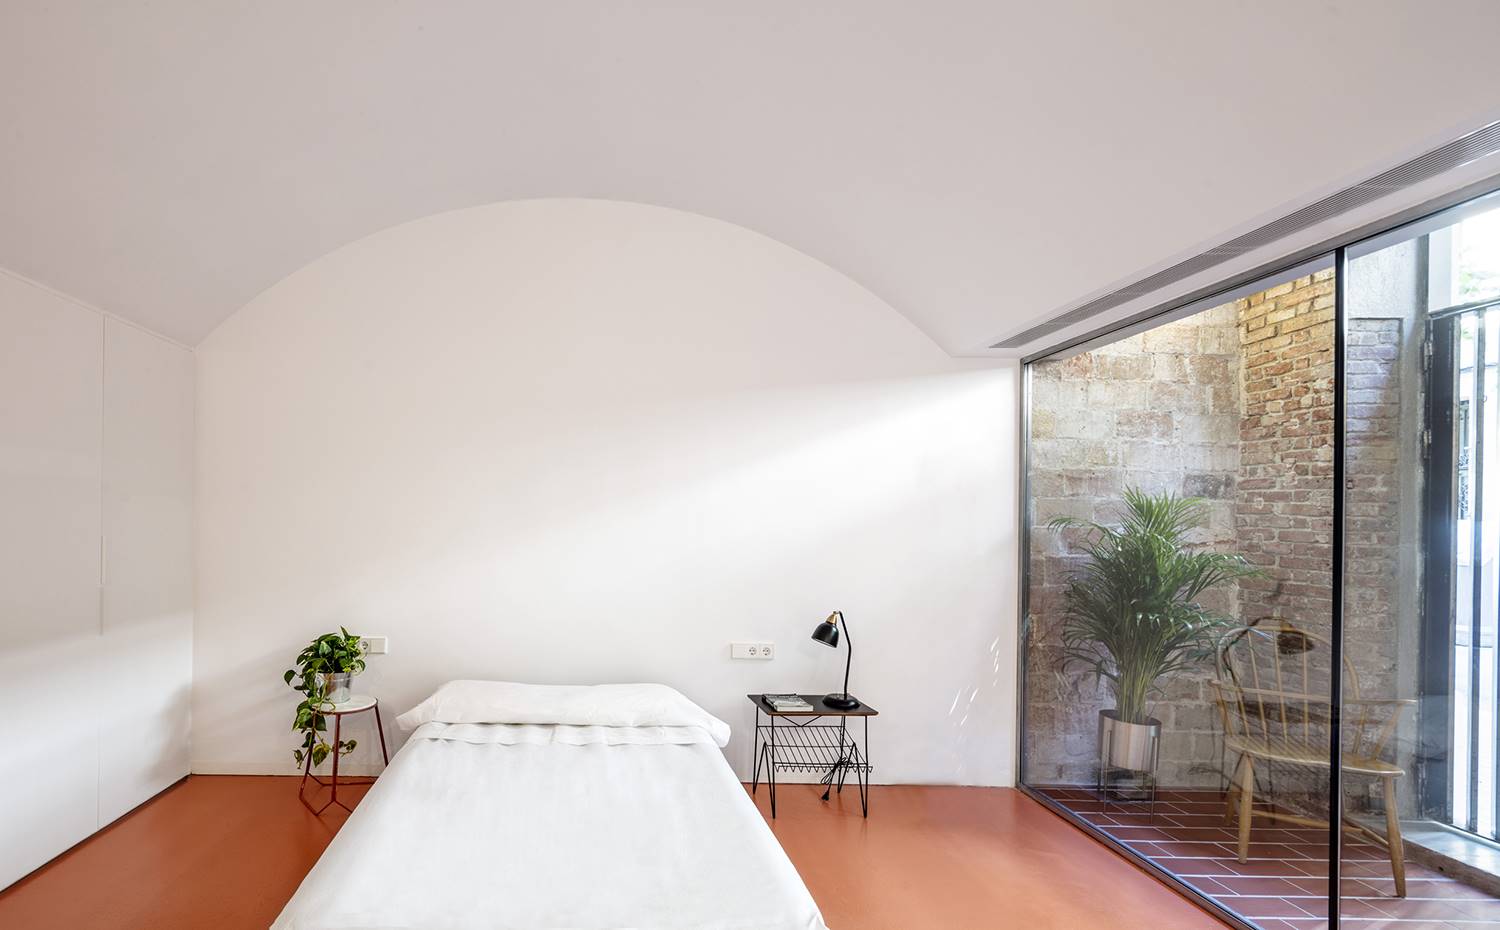 Dormitorio doble, bóveda techo, cerramiento acristalado. Predomiantemente blanco y puro, el dormitorio principal contrasta con las paredes de piedra y el suelo cerámico de la zona de acceso. 